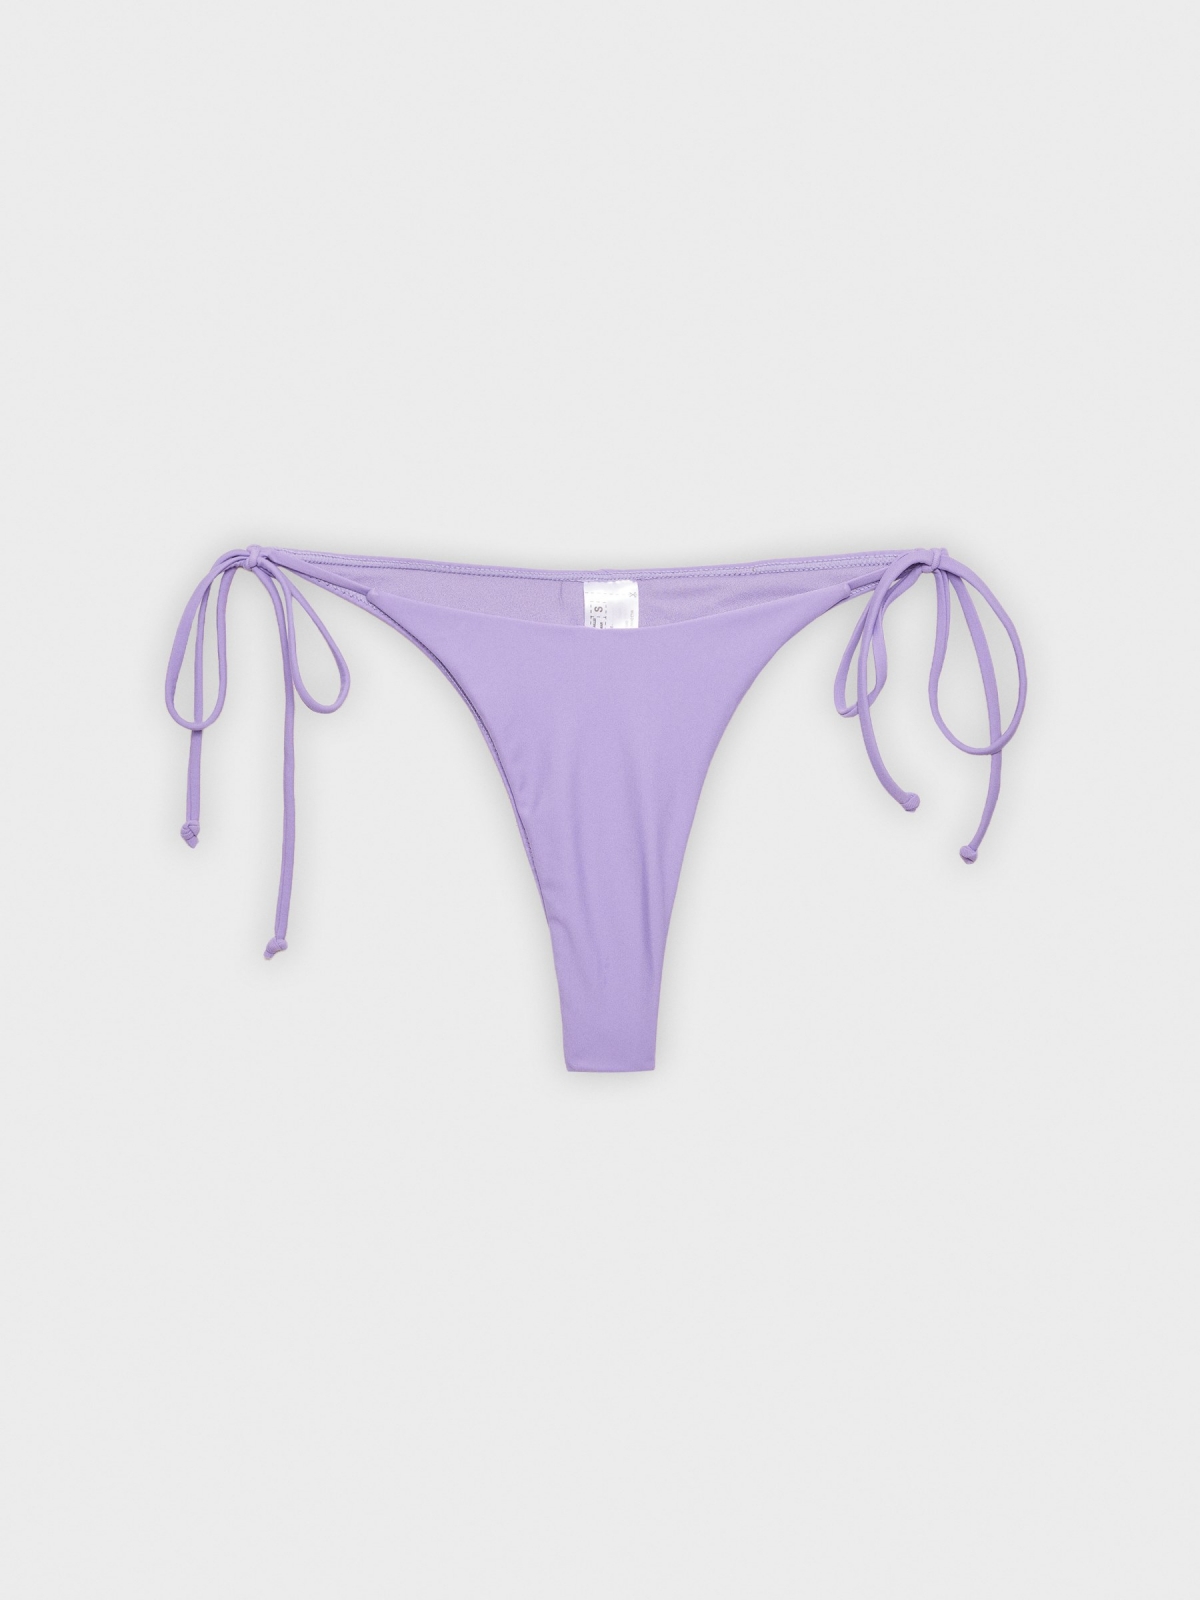  Fundos de bikini brasileiro de gola em V lilás